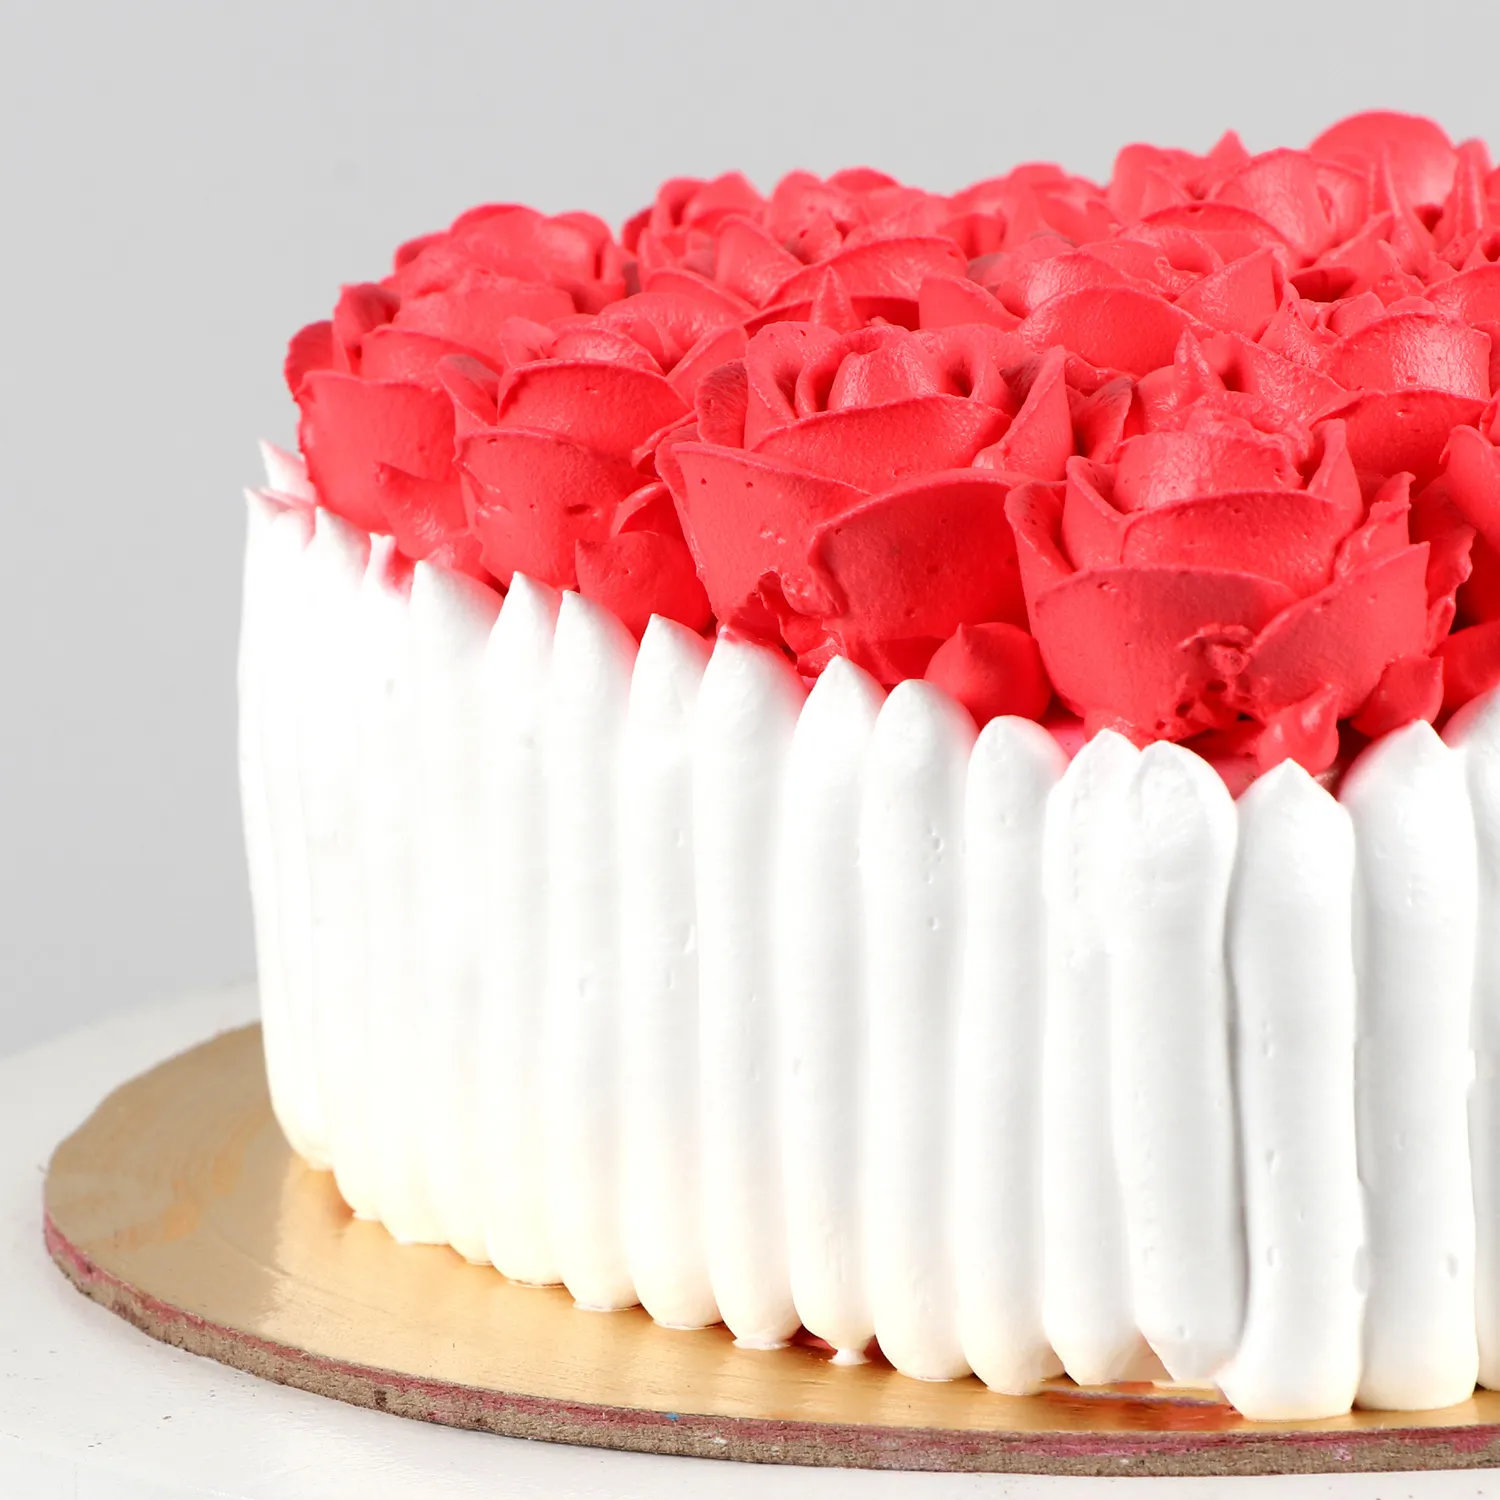 Happy Birthday Cake - 1 KG